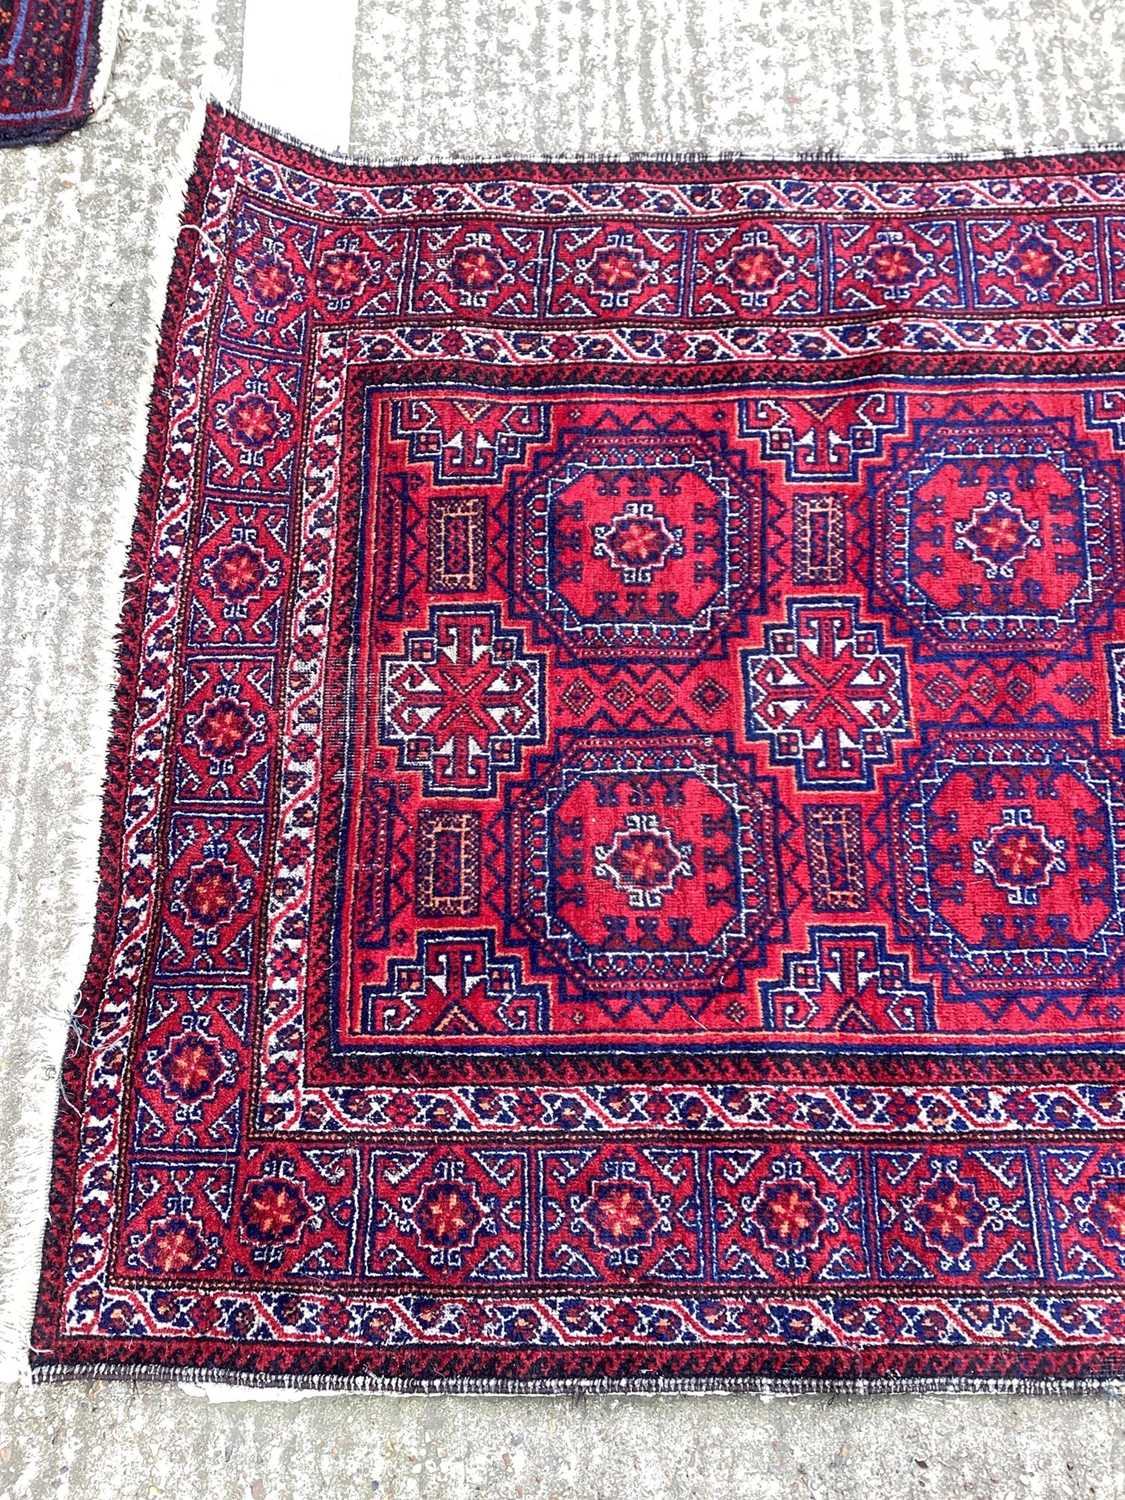 Baluchi rug 1.90m x 1.02m - Image 2 of 5